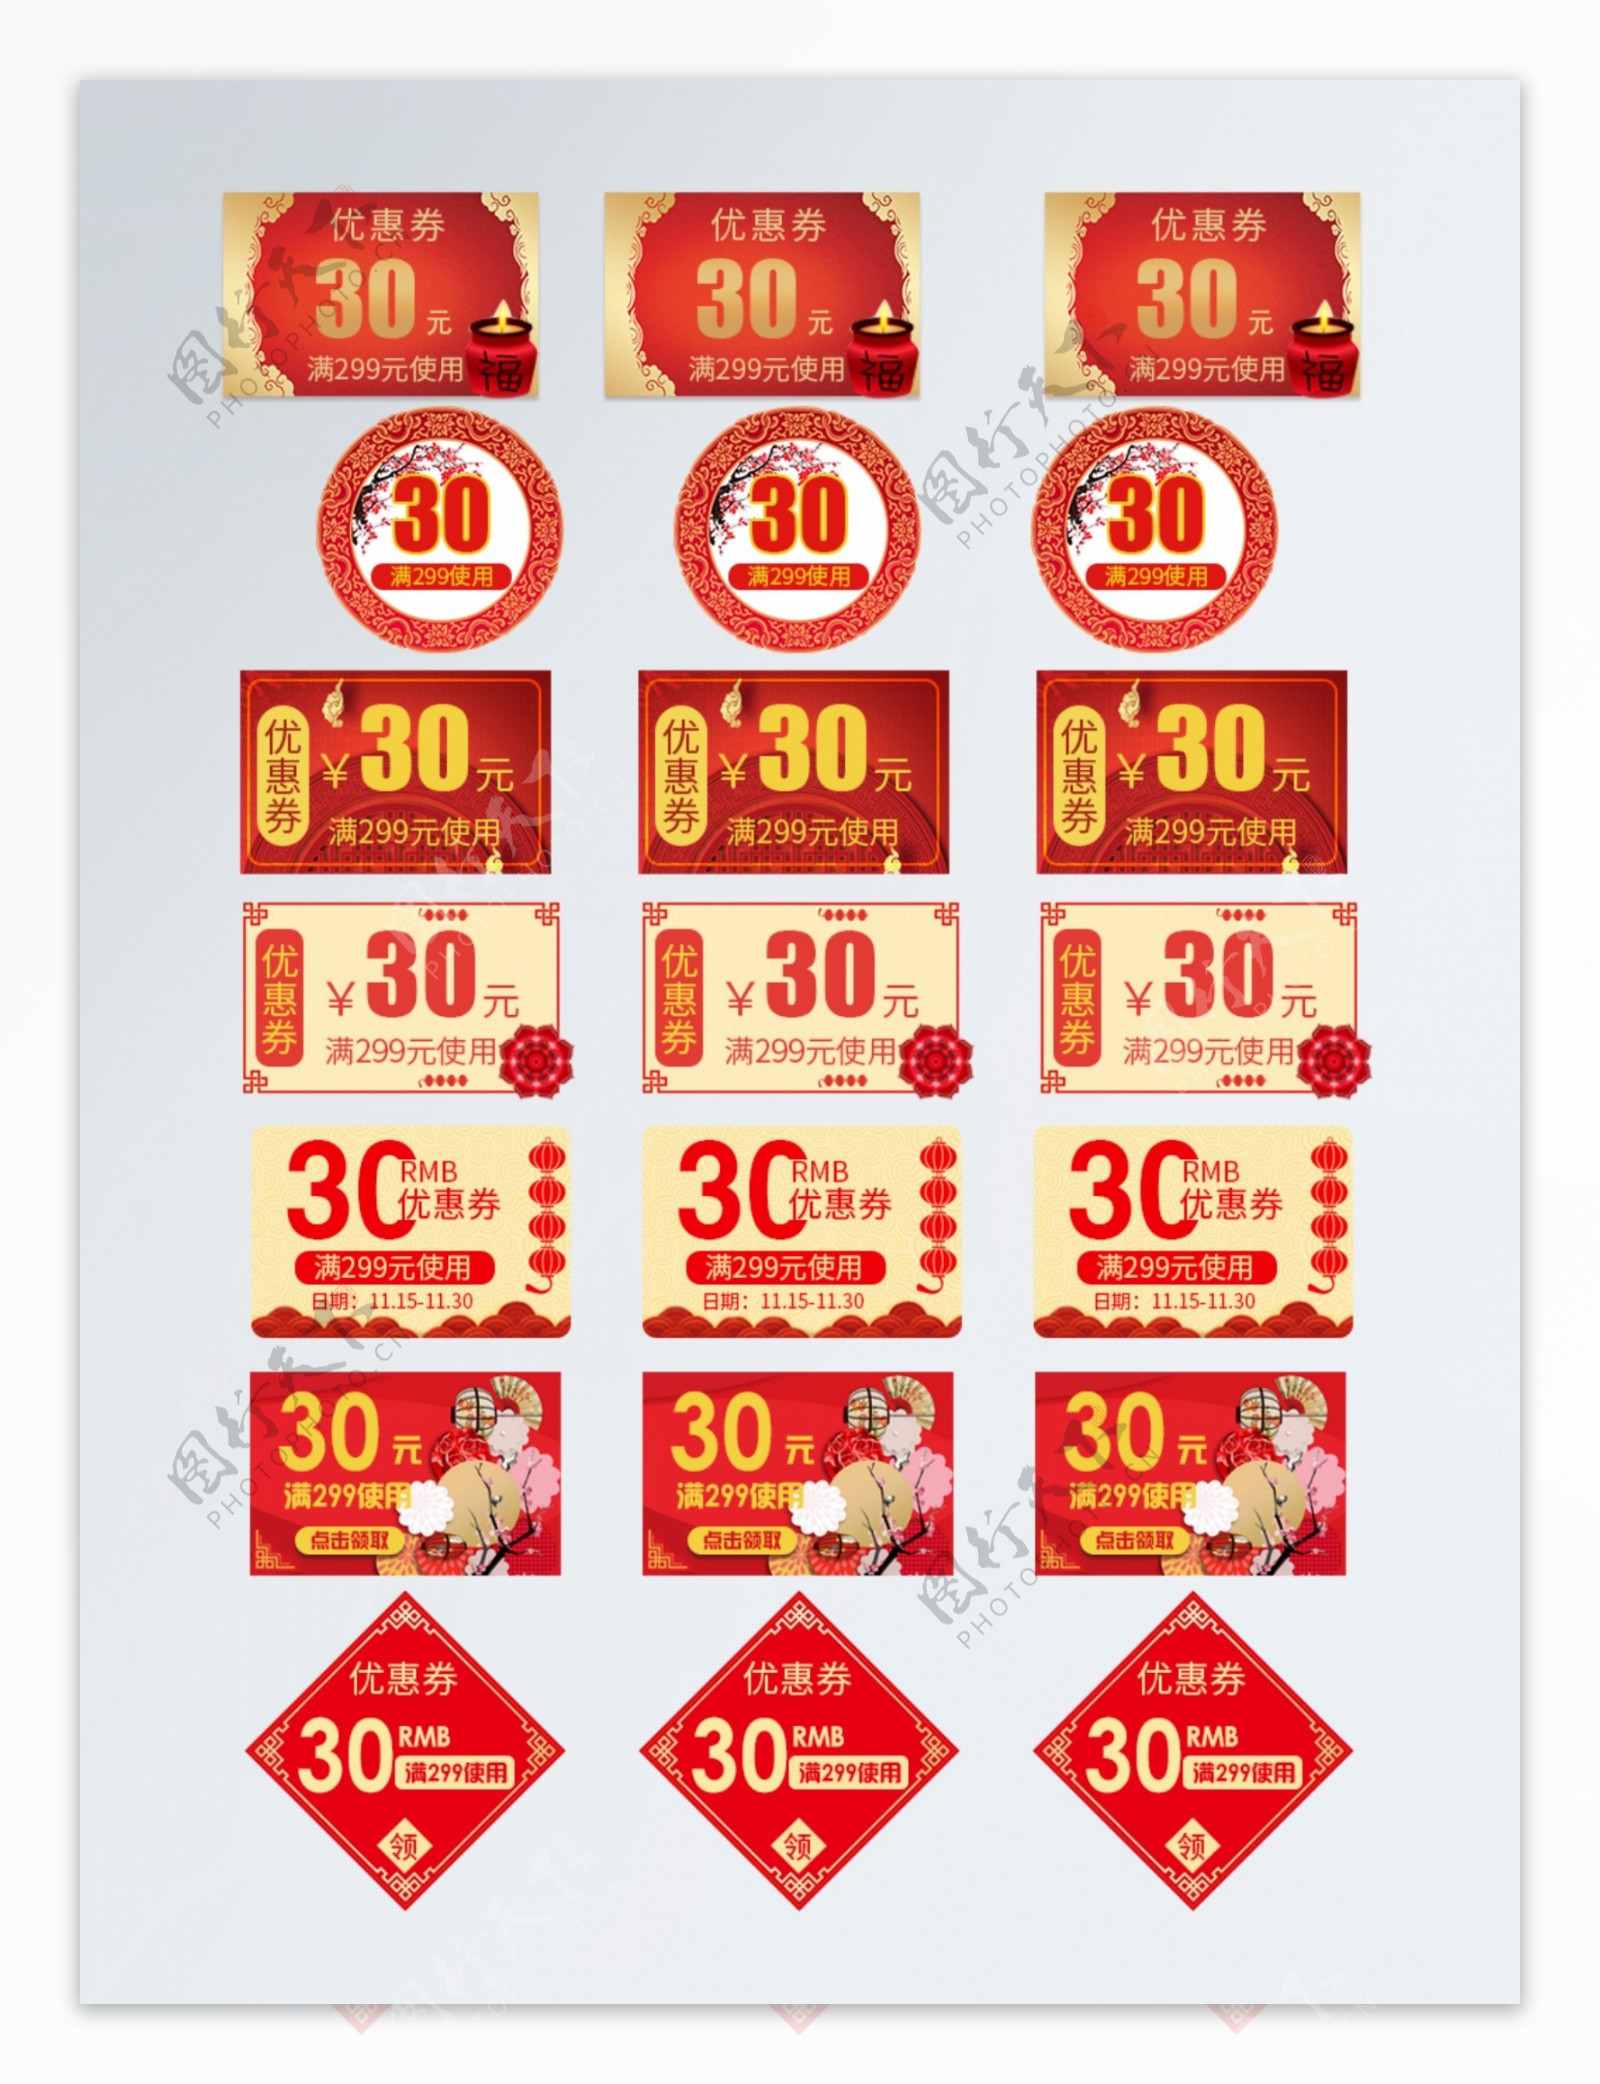 天猫淘宝新年优惠券中国风红色折扣券模板